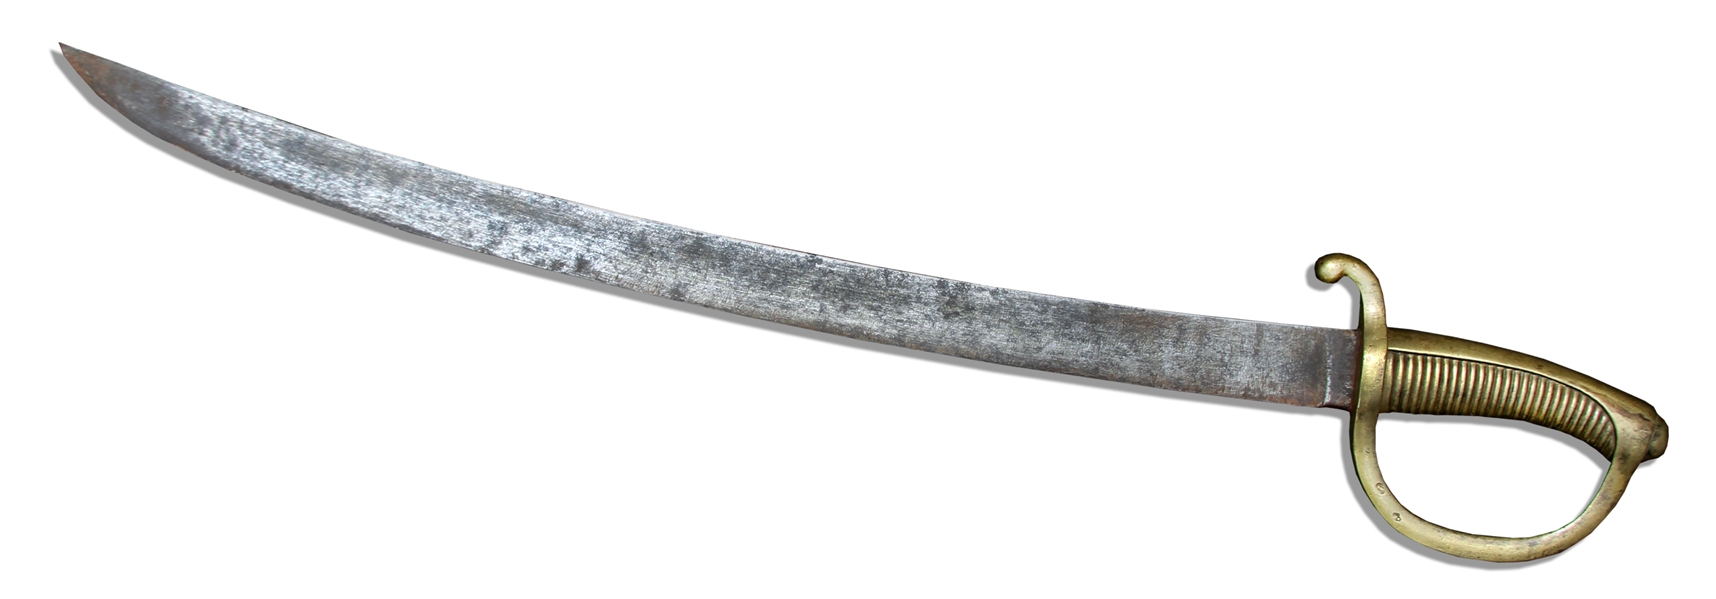 Mid-1800's Short Sword